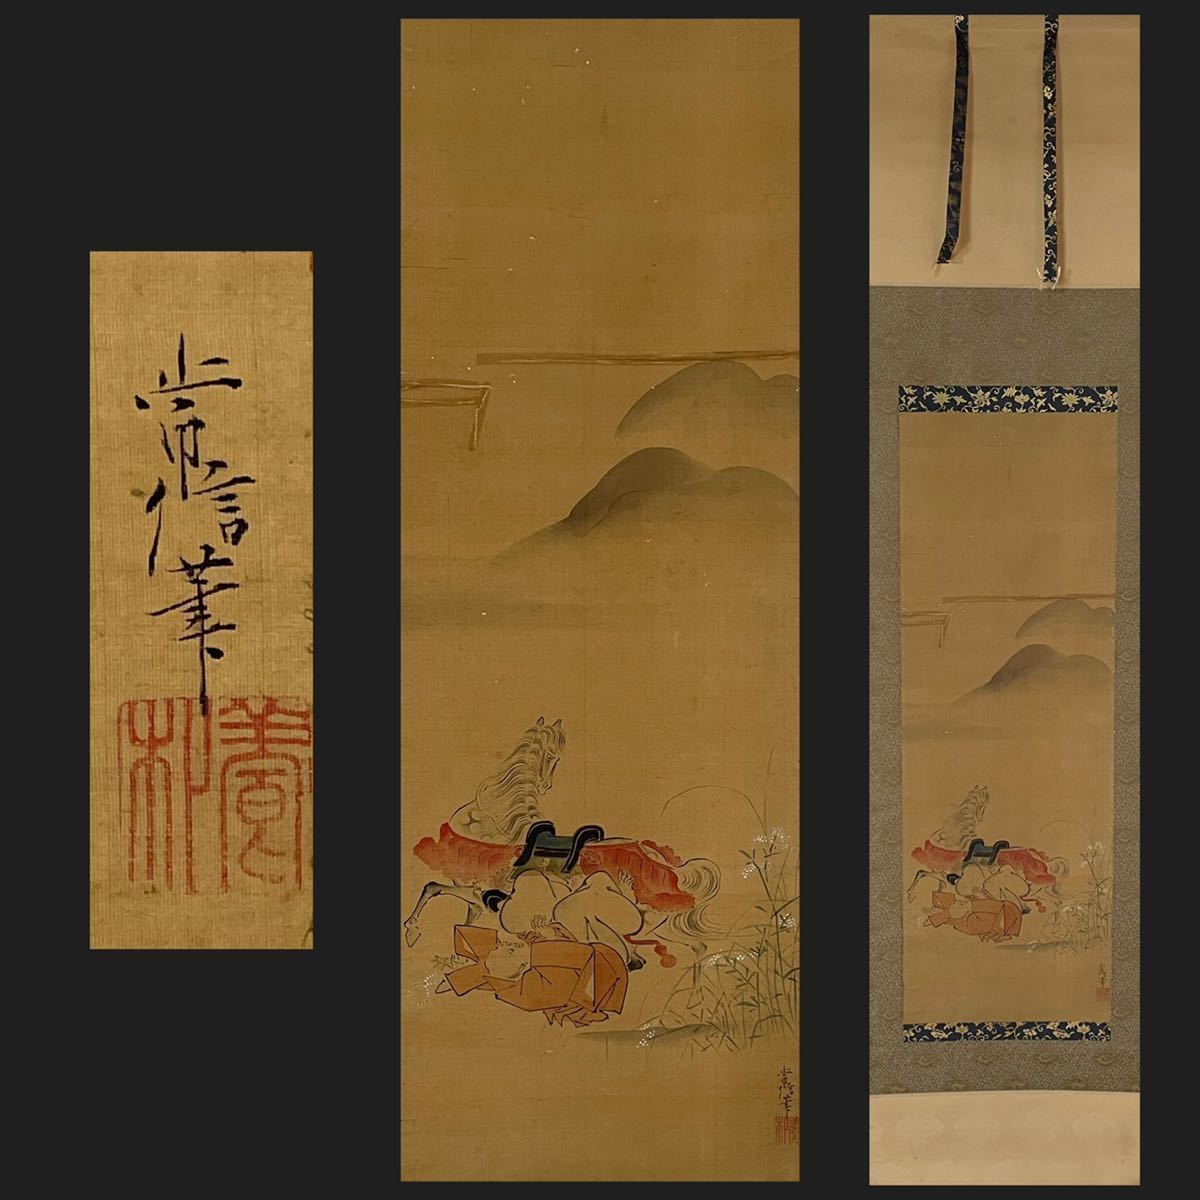 模写 古画 絹本 江戸時代 狩野常信 馬と人物図 掛軸 掛け軸 検:狩野派 